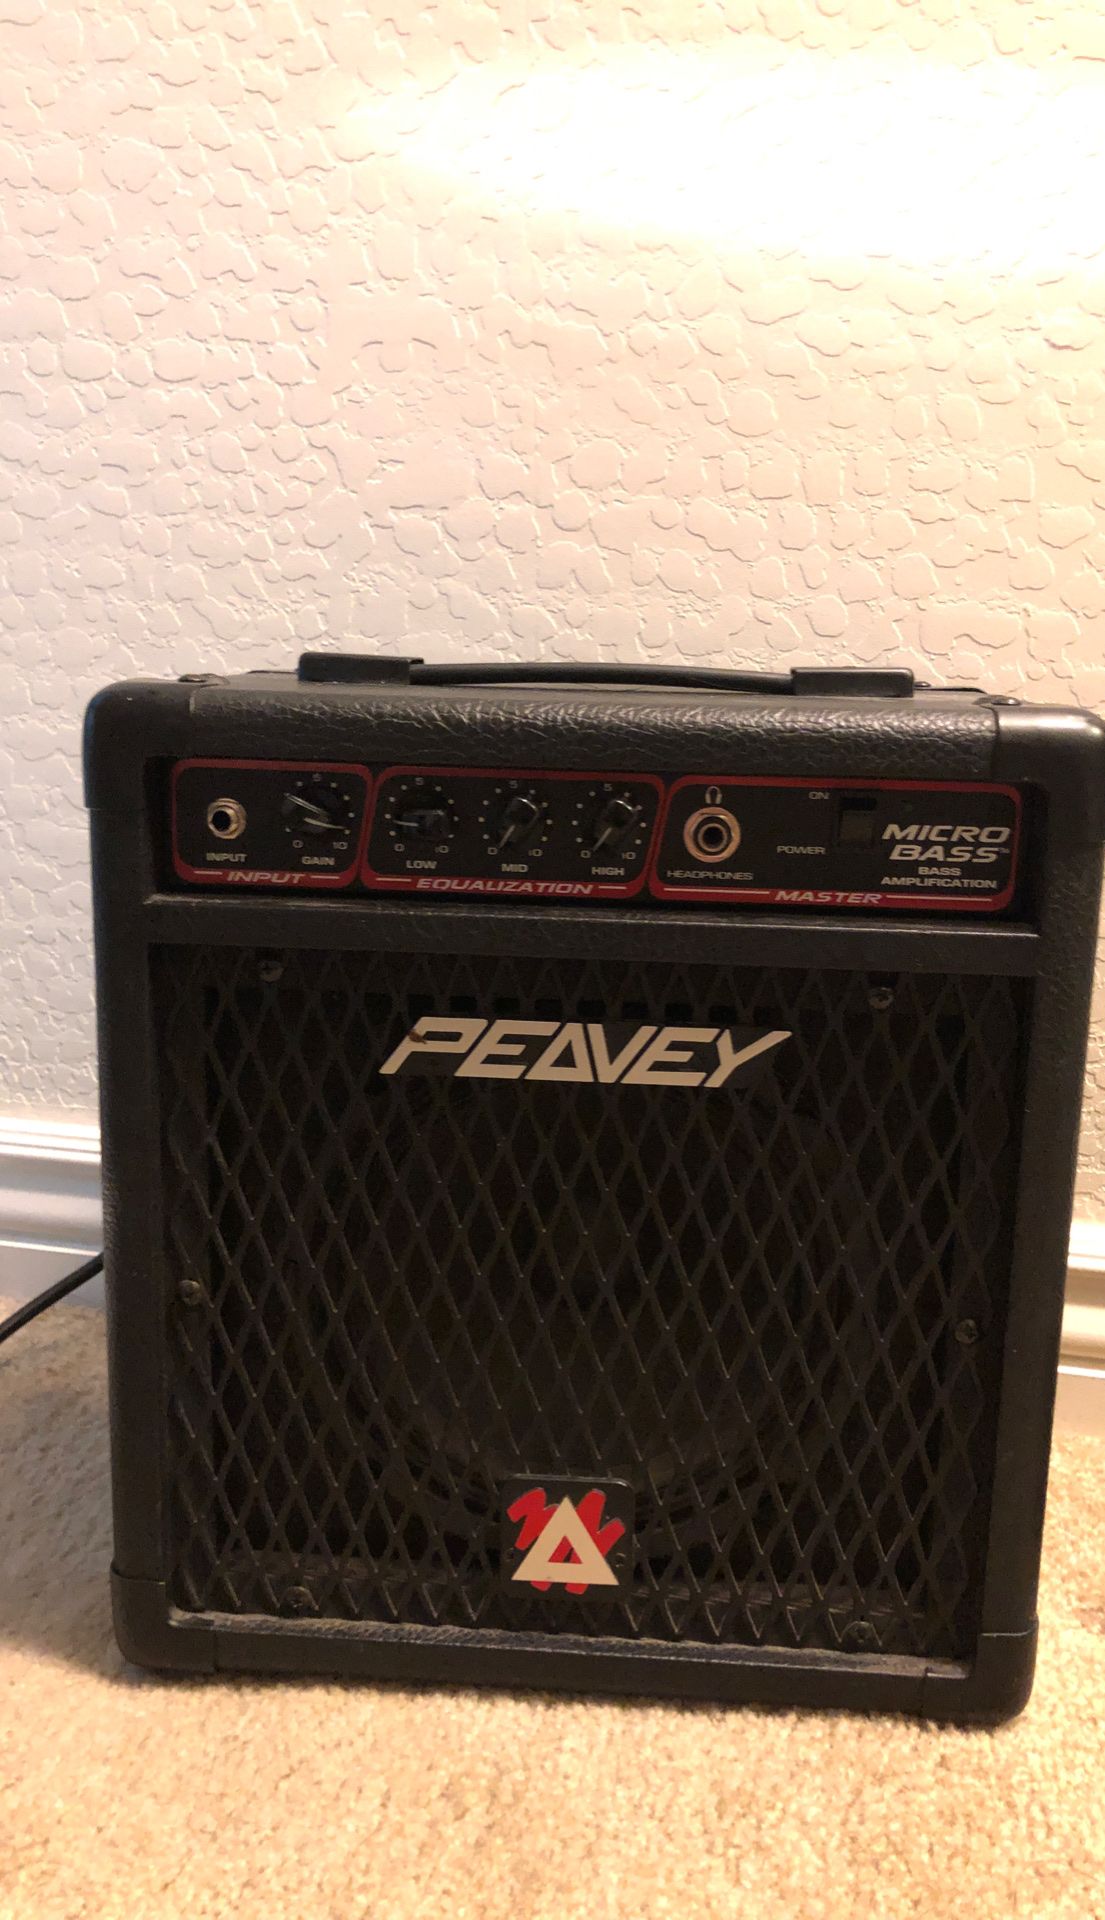 Peavey guitar amp